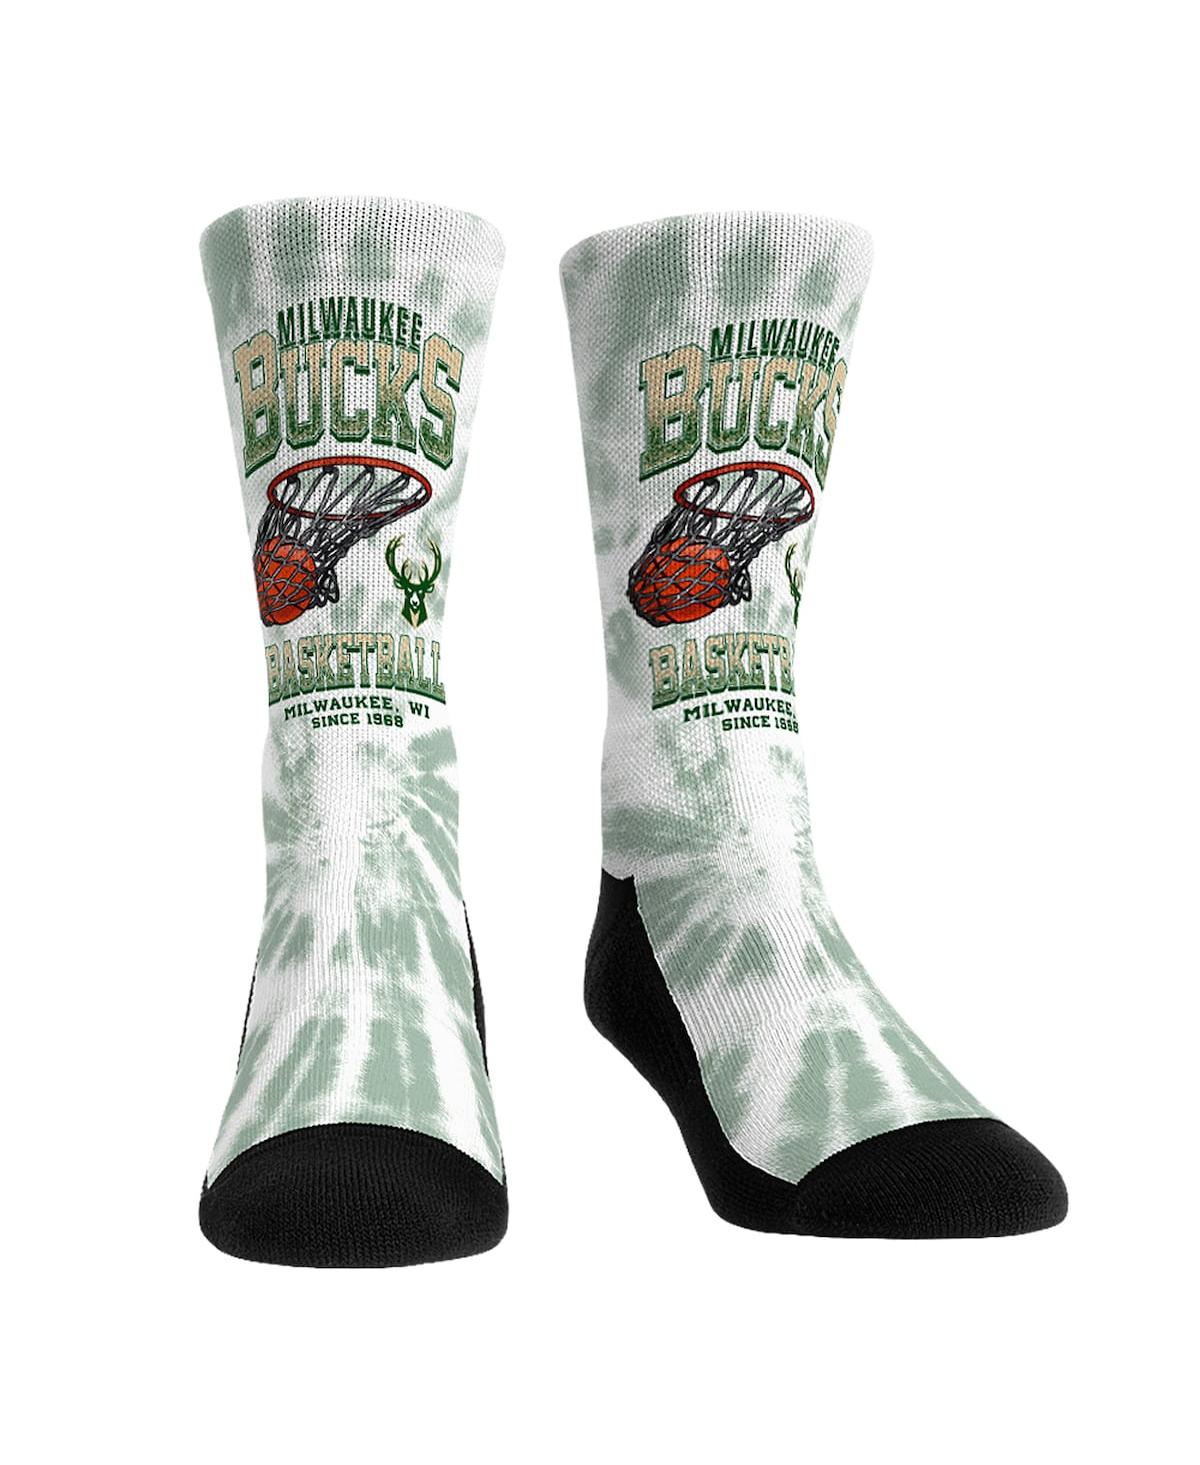 Rock 'em Men's And Women's  Socks Milwaukee Bucks Vintage-like Hoop Crew Socks In Green,white